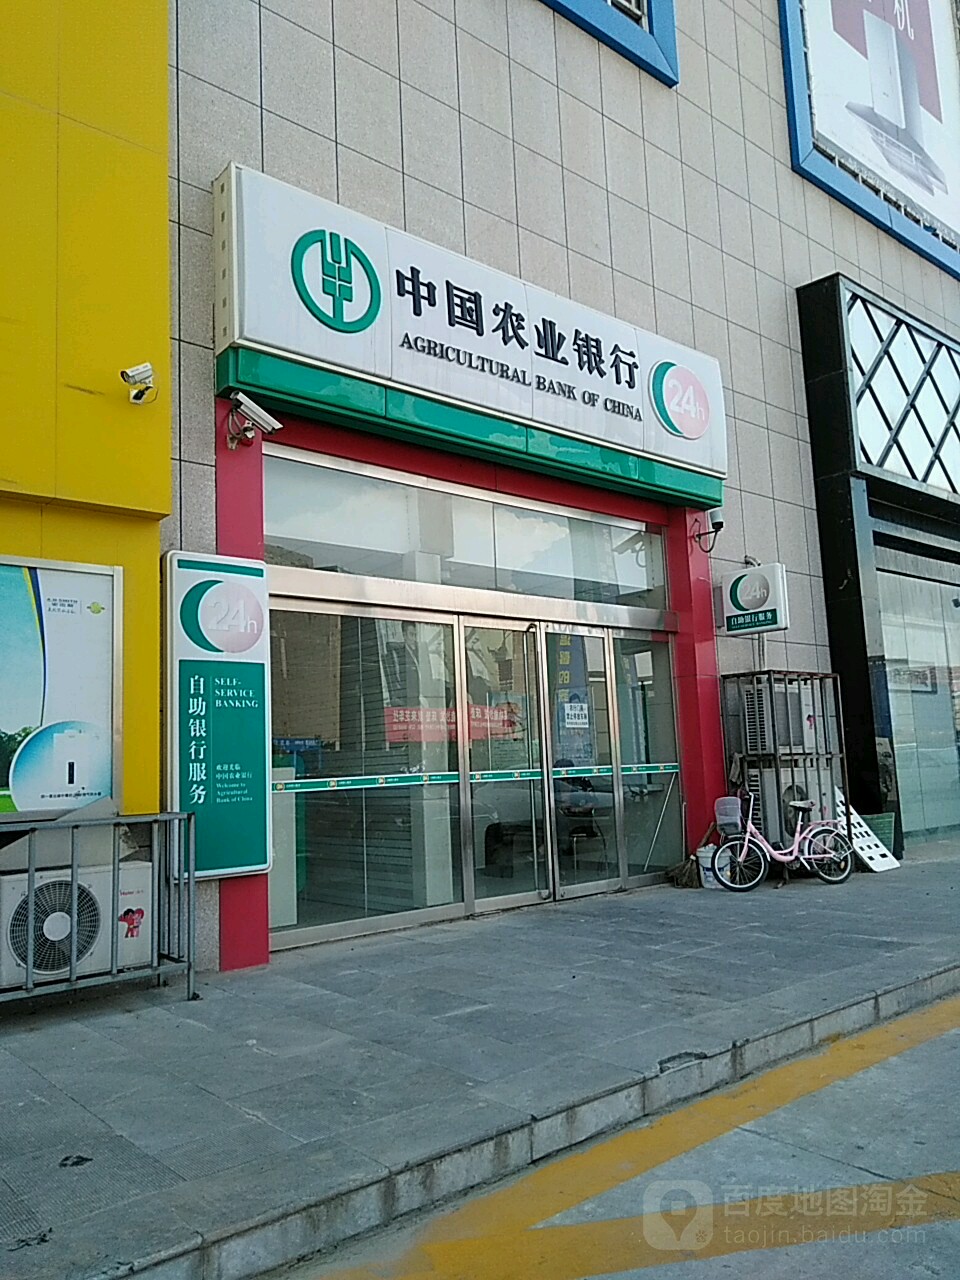 中國農業銀行24小時自助銀行(涇渭北路)